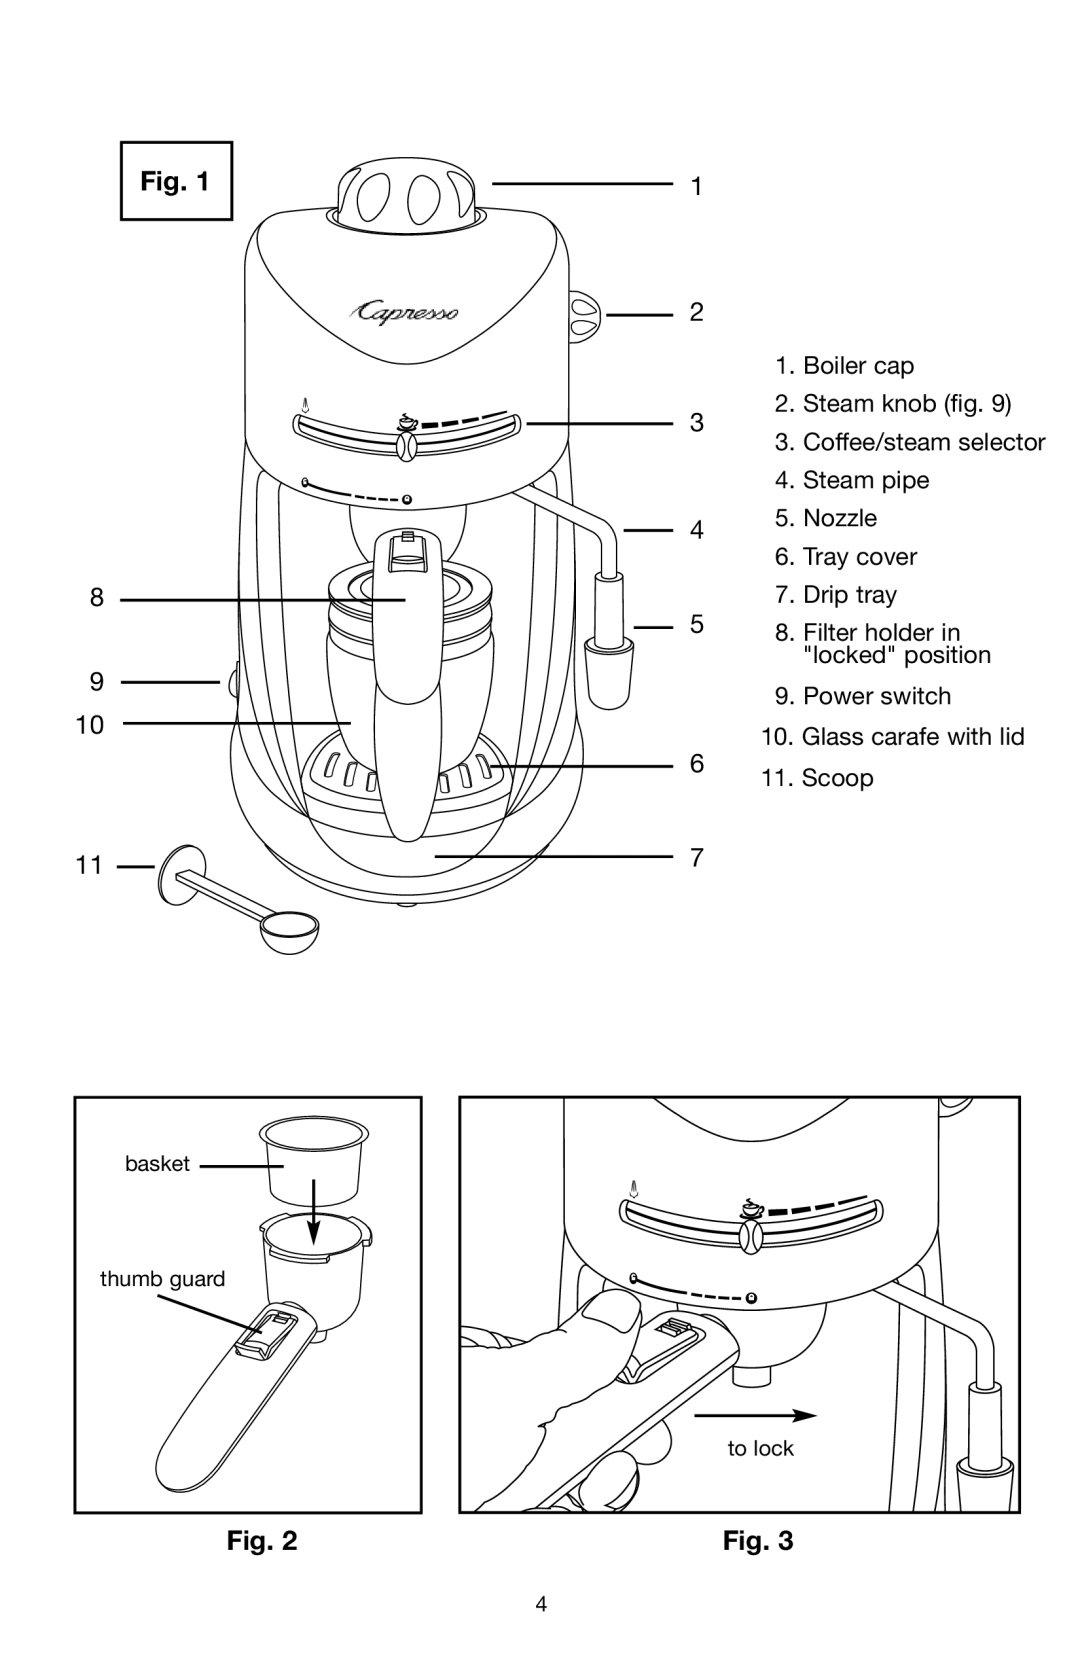 Capresso #303 Boiler cap 2. Steam knob . Coffee/steam selector, Steam pipe 5. Nozzle 6. Tray cover 7. Drip tray, to lock 